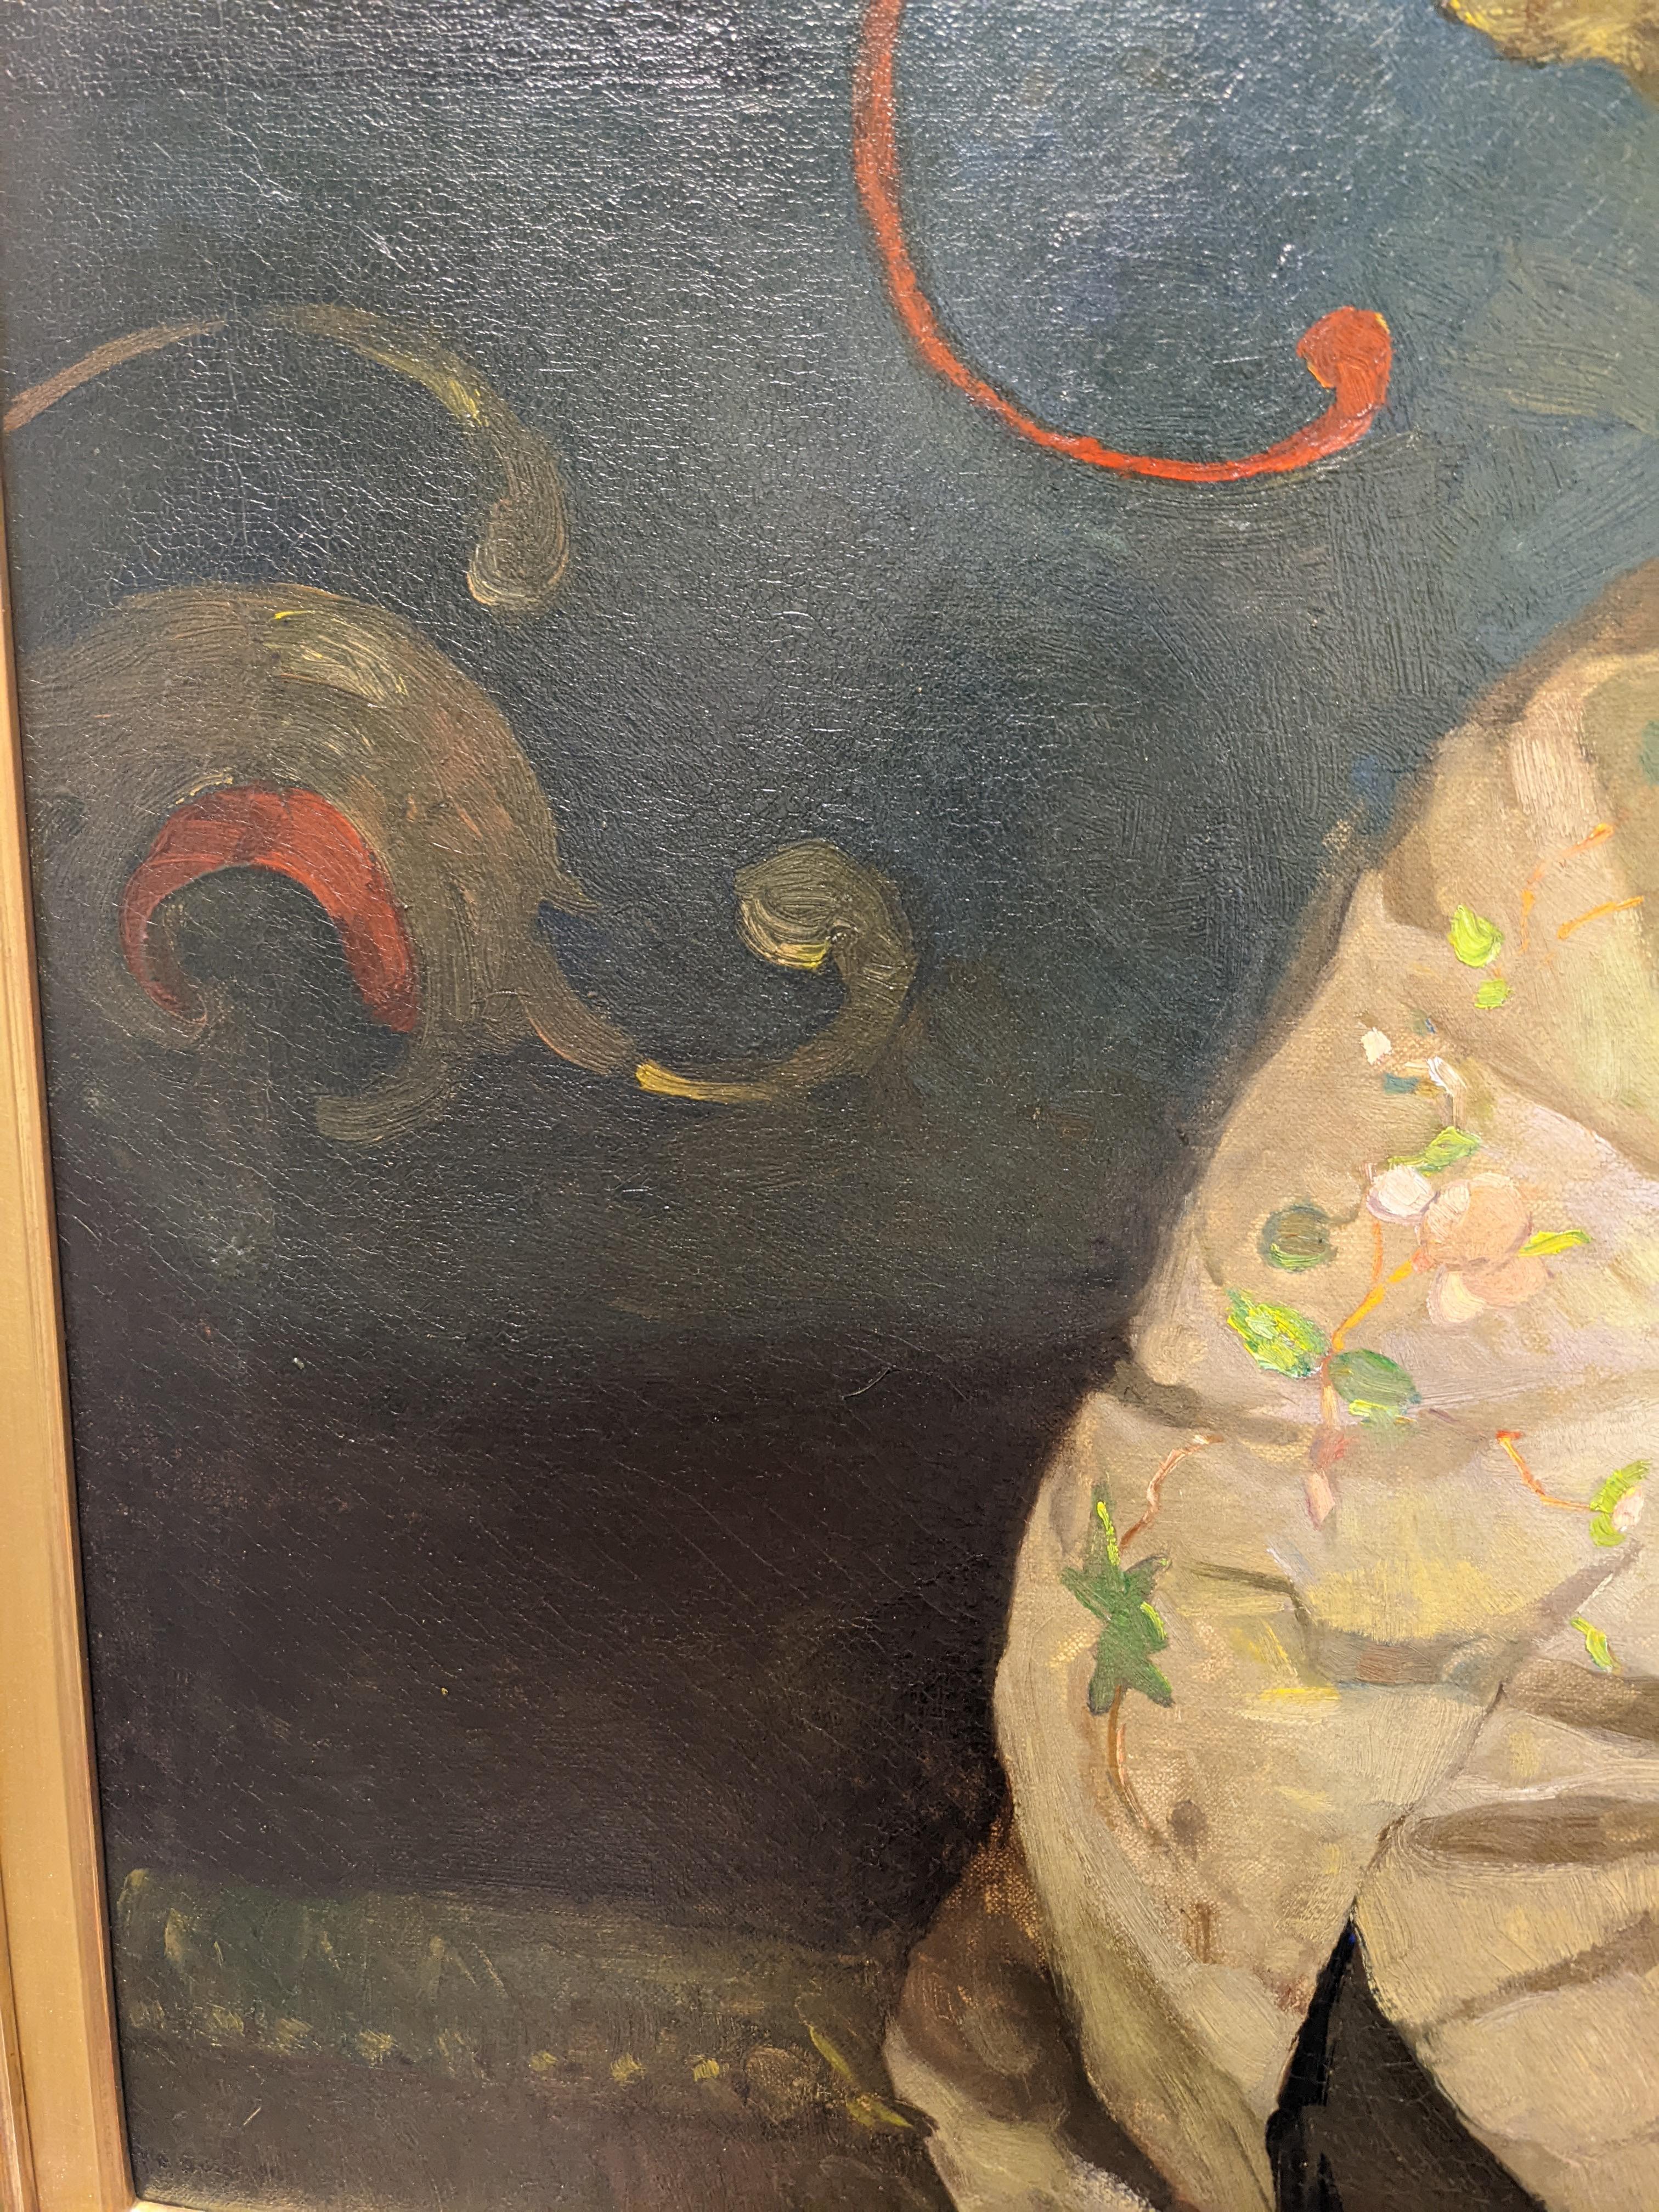 Der Opium-Raucher; Der Opium-Esser von N.C. Wyeth wurde im Jahr 1913 gegründet. Das Gemälde ist oben rechts signiert. Dedic unten links, dass 